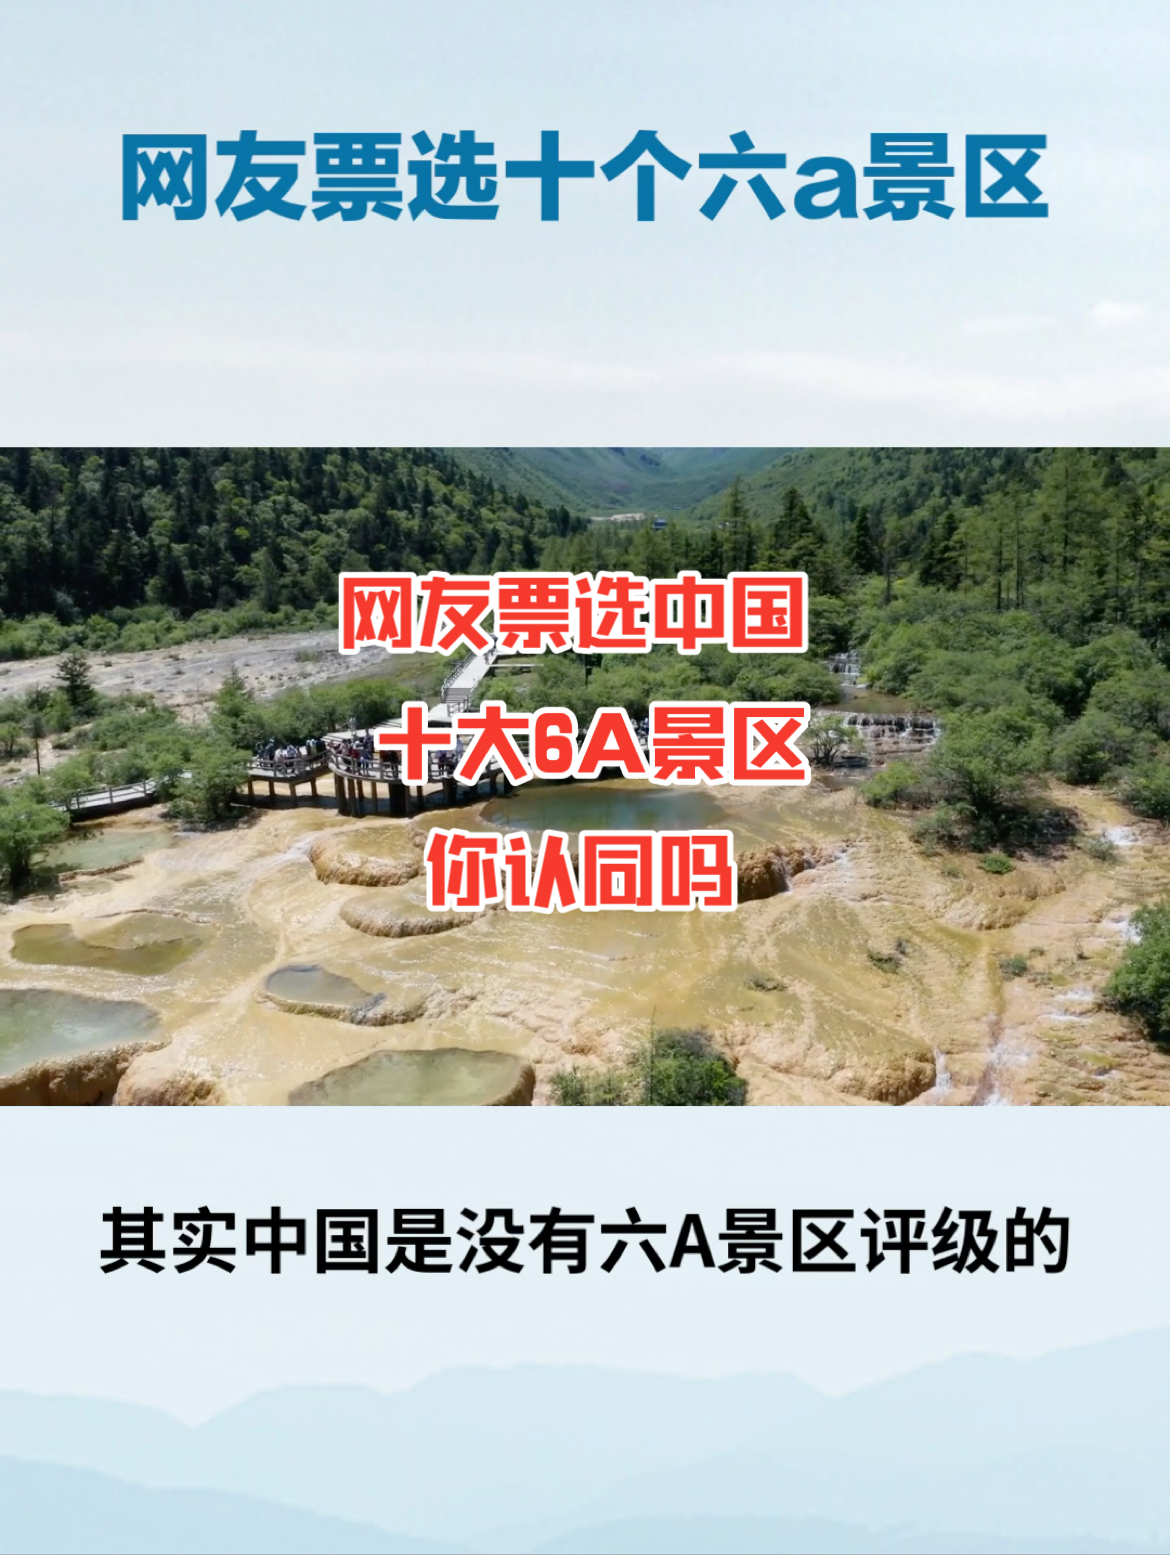 其实中国是没有6a景区评级的，但由于现在5a景区太泛滥，因此网友票选了十个6a景区，十，长江三峡，长